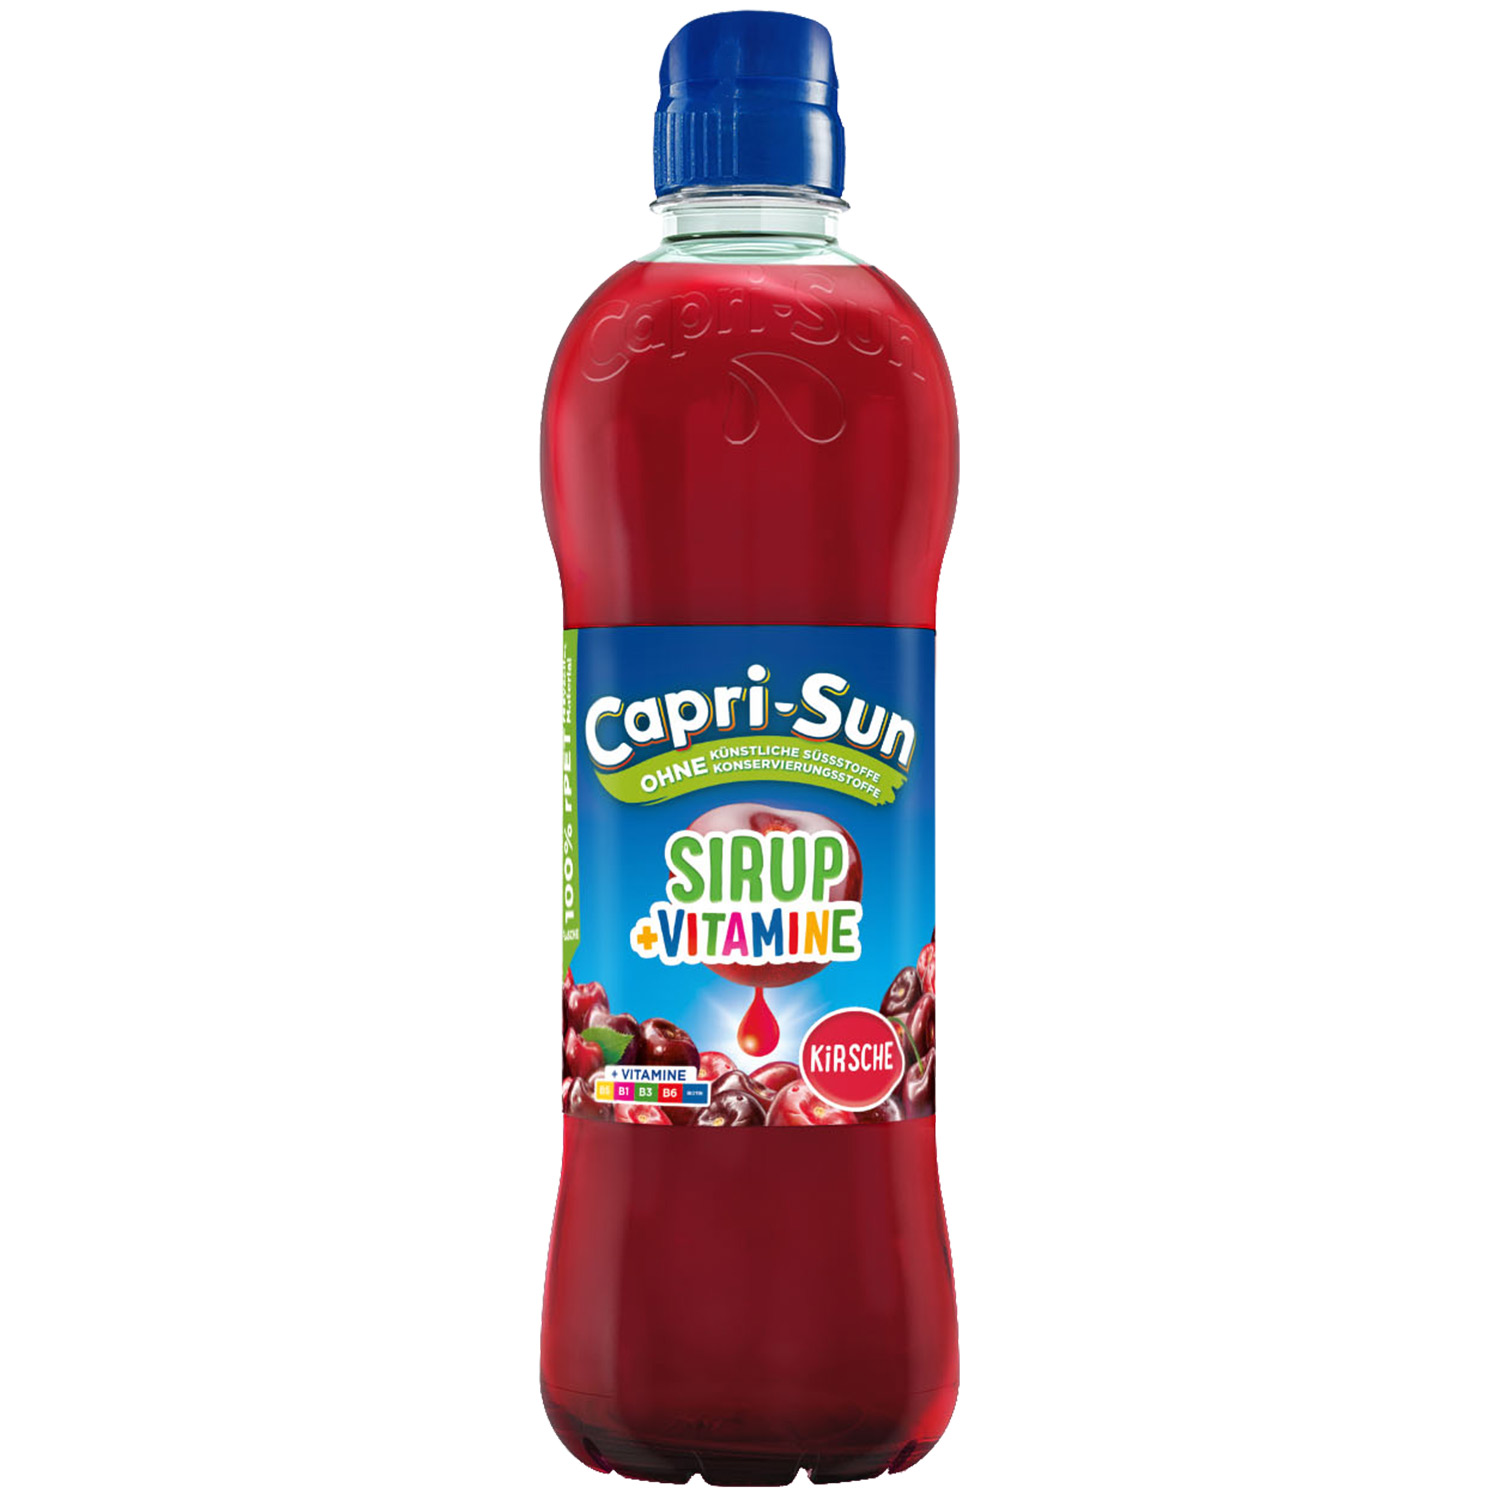 Capri-Sun Sirup + Vitamine Kirsche 600ml | Online kaufen im World of ...